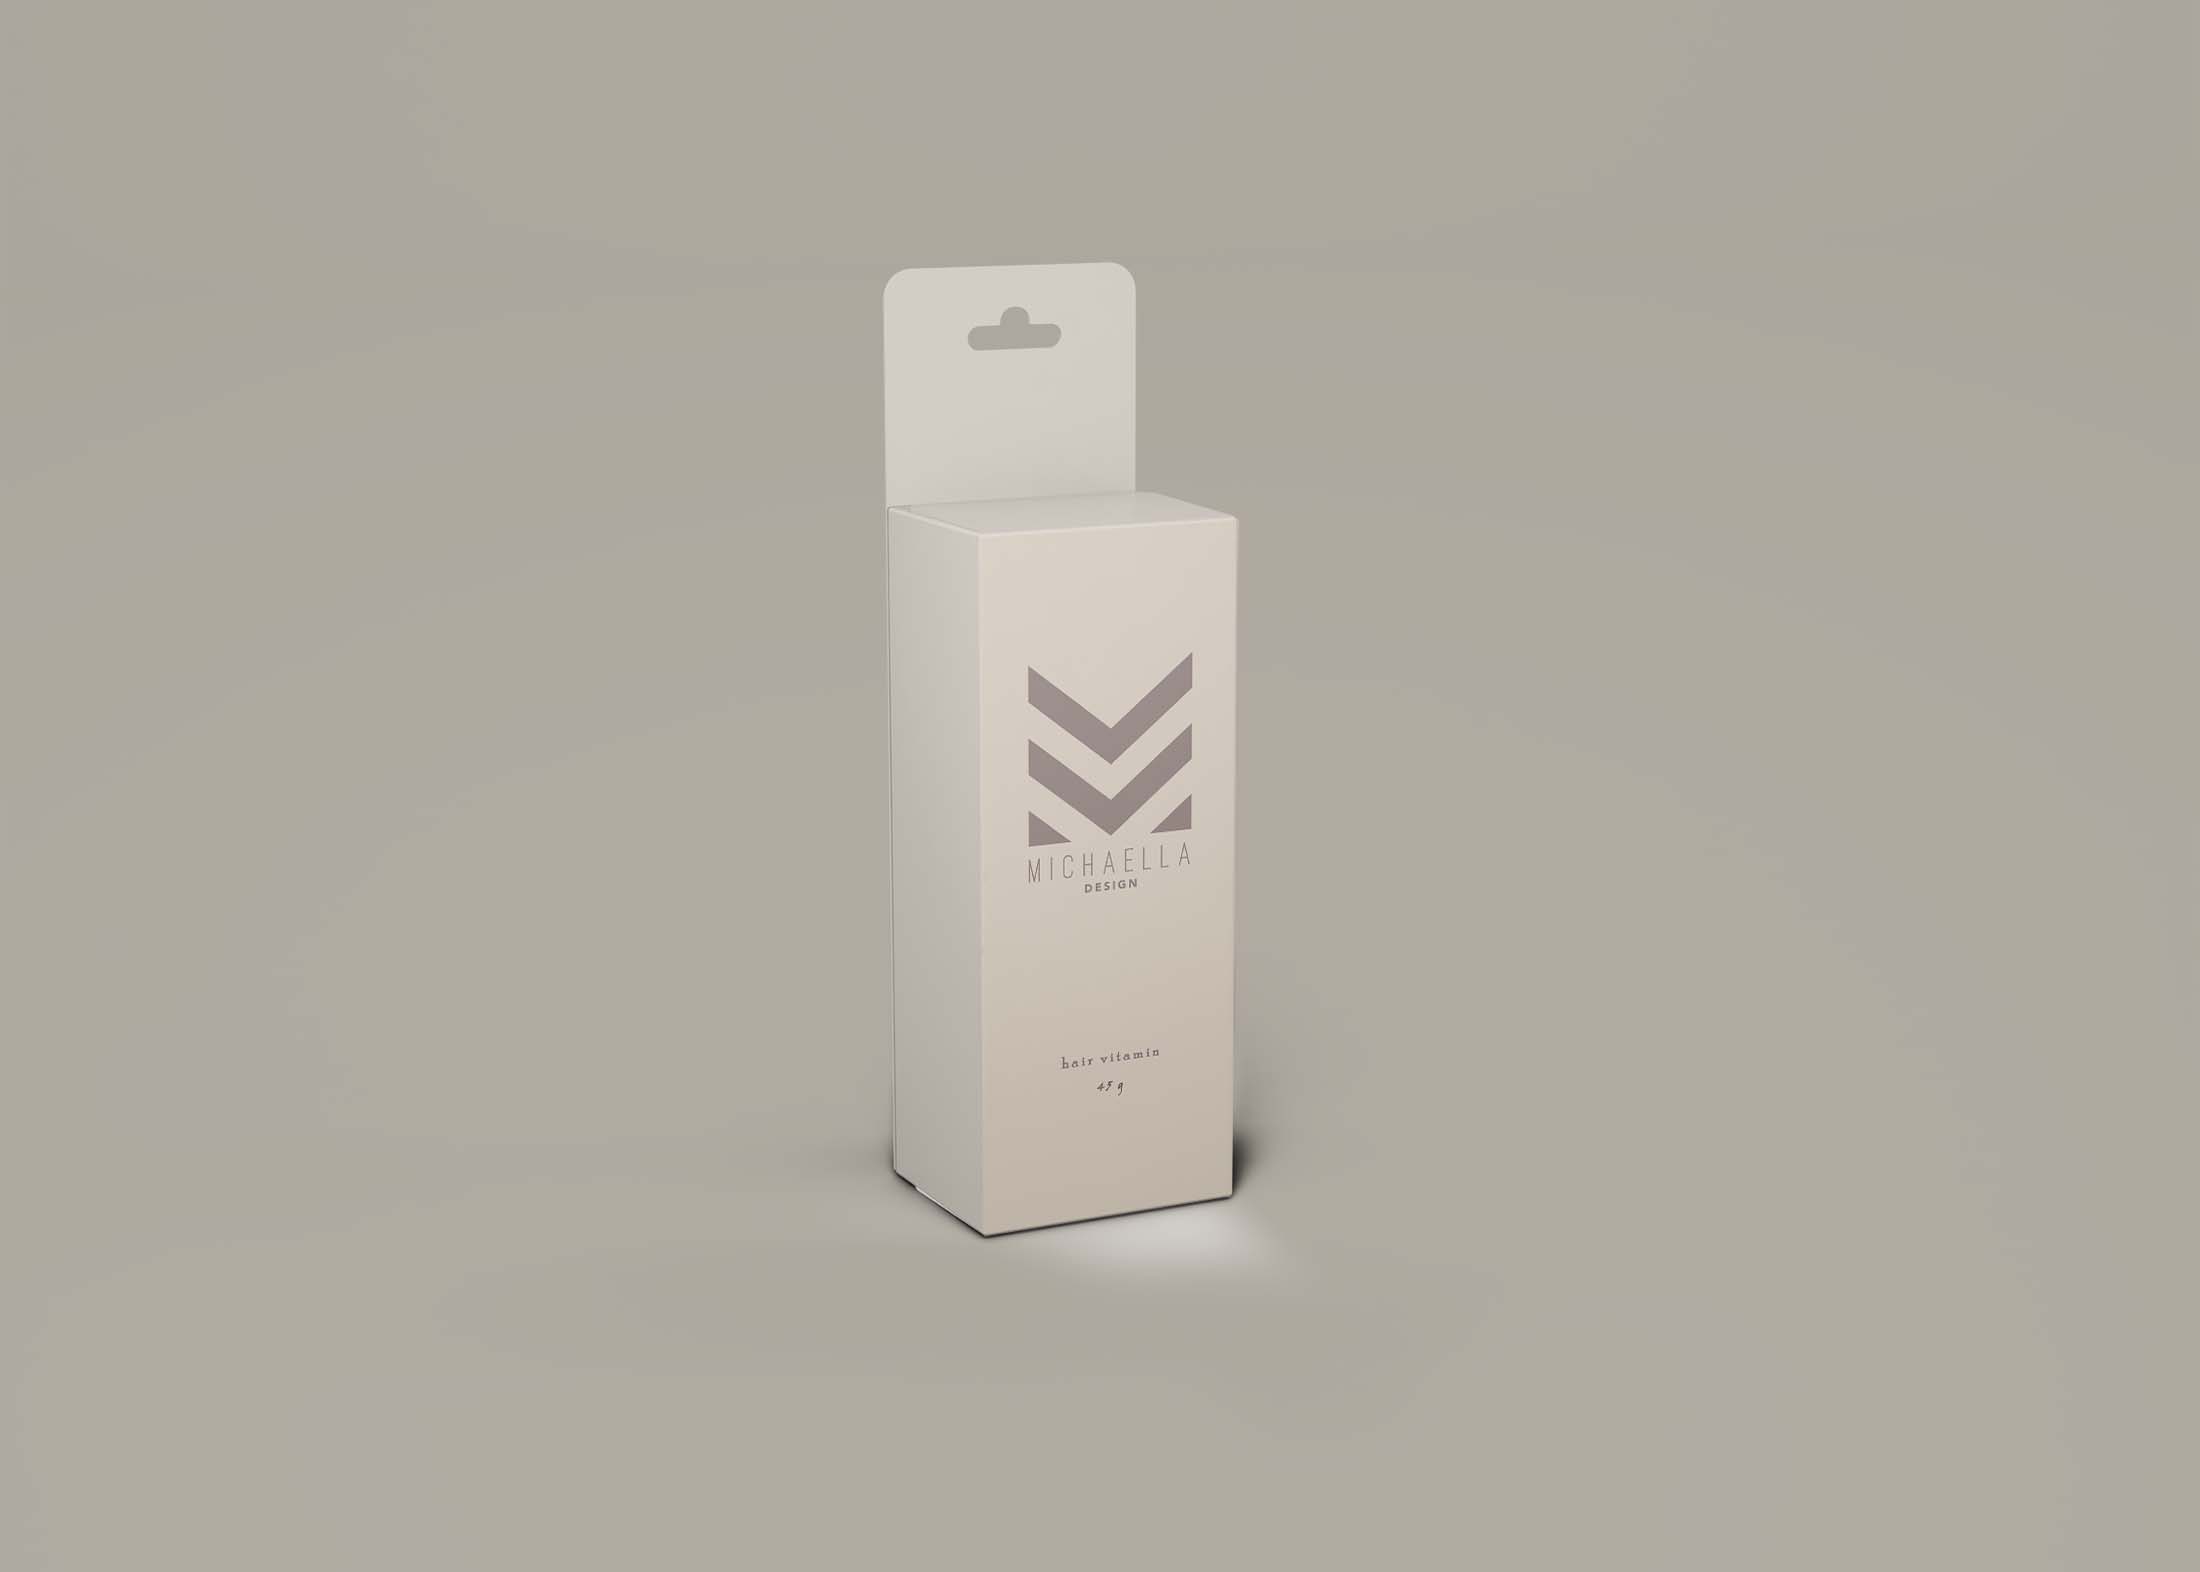 Free Mithia Box Packaging Design Mockup